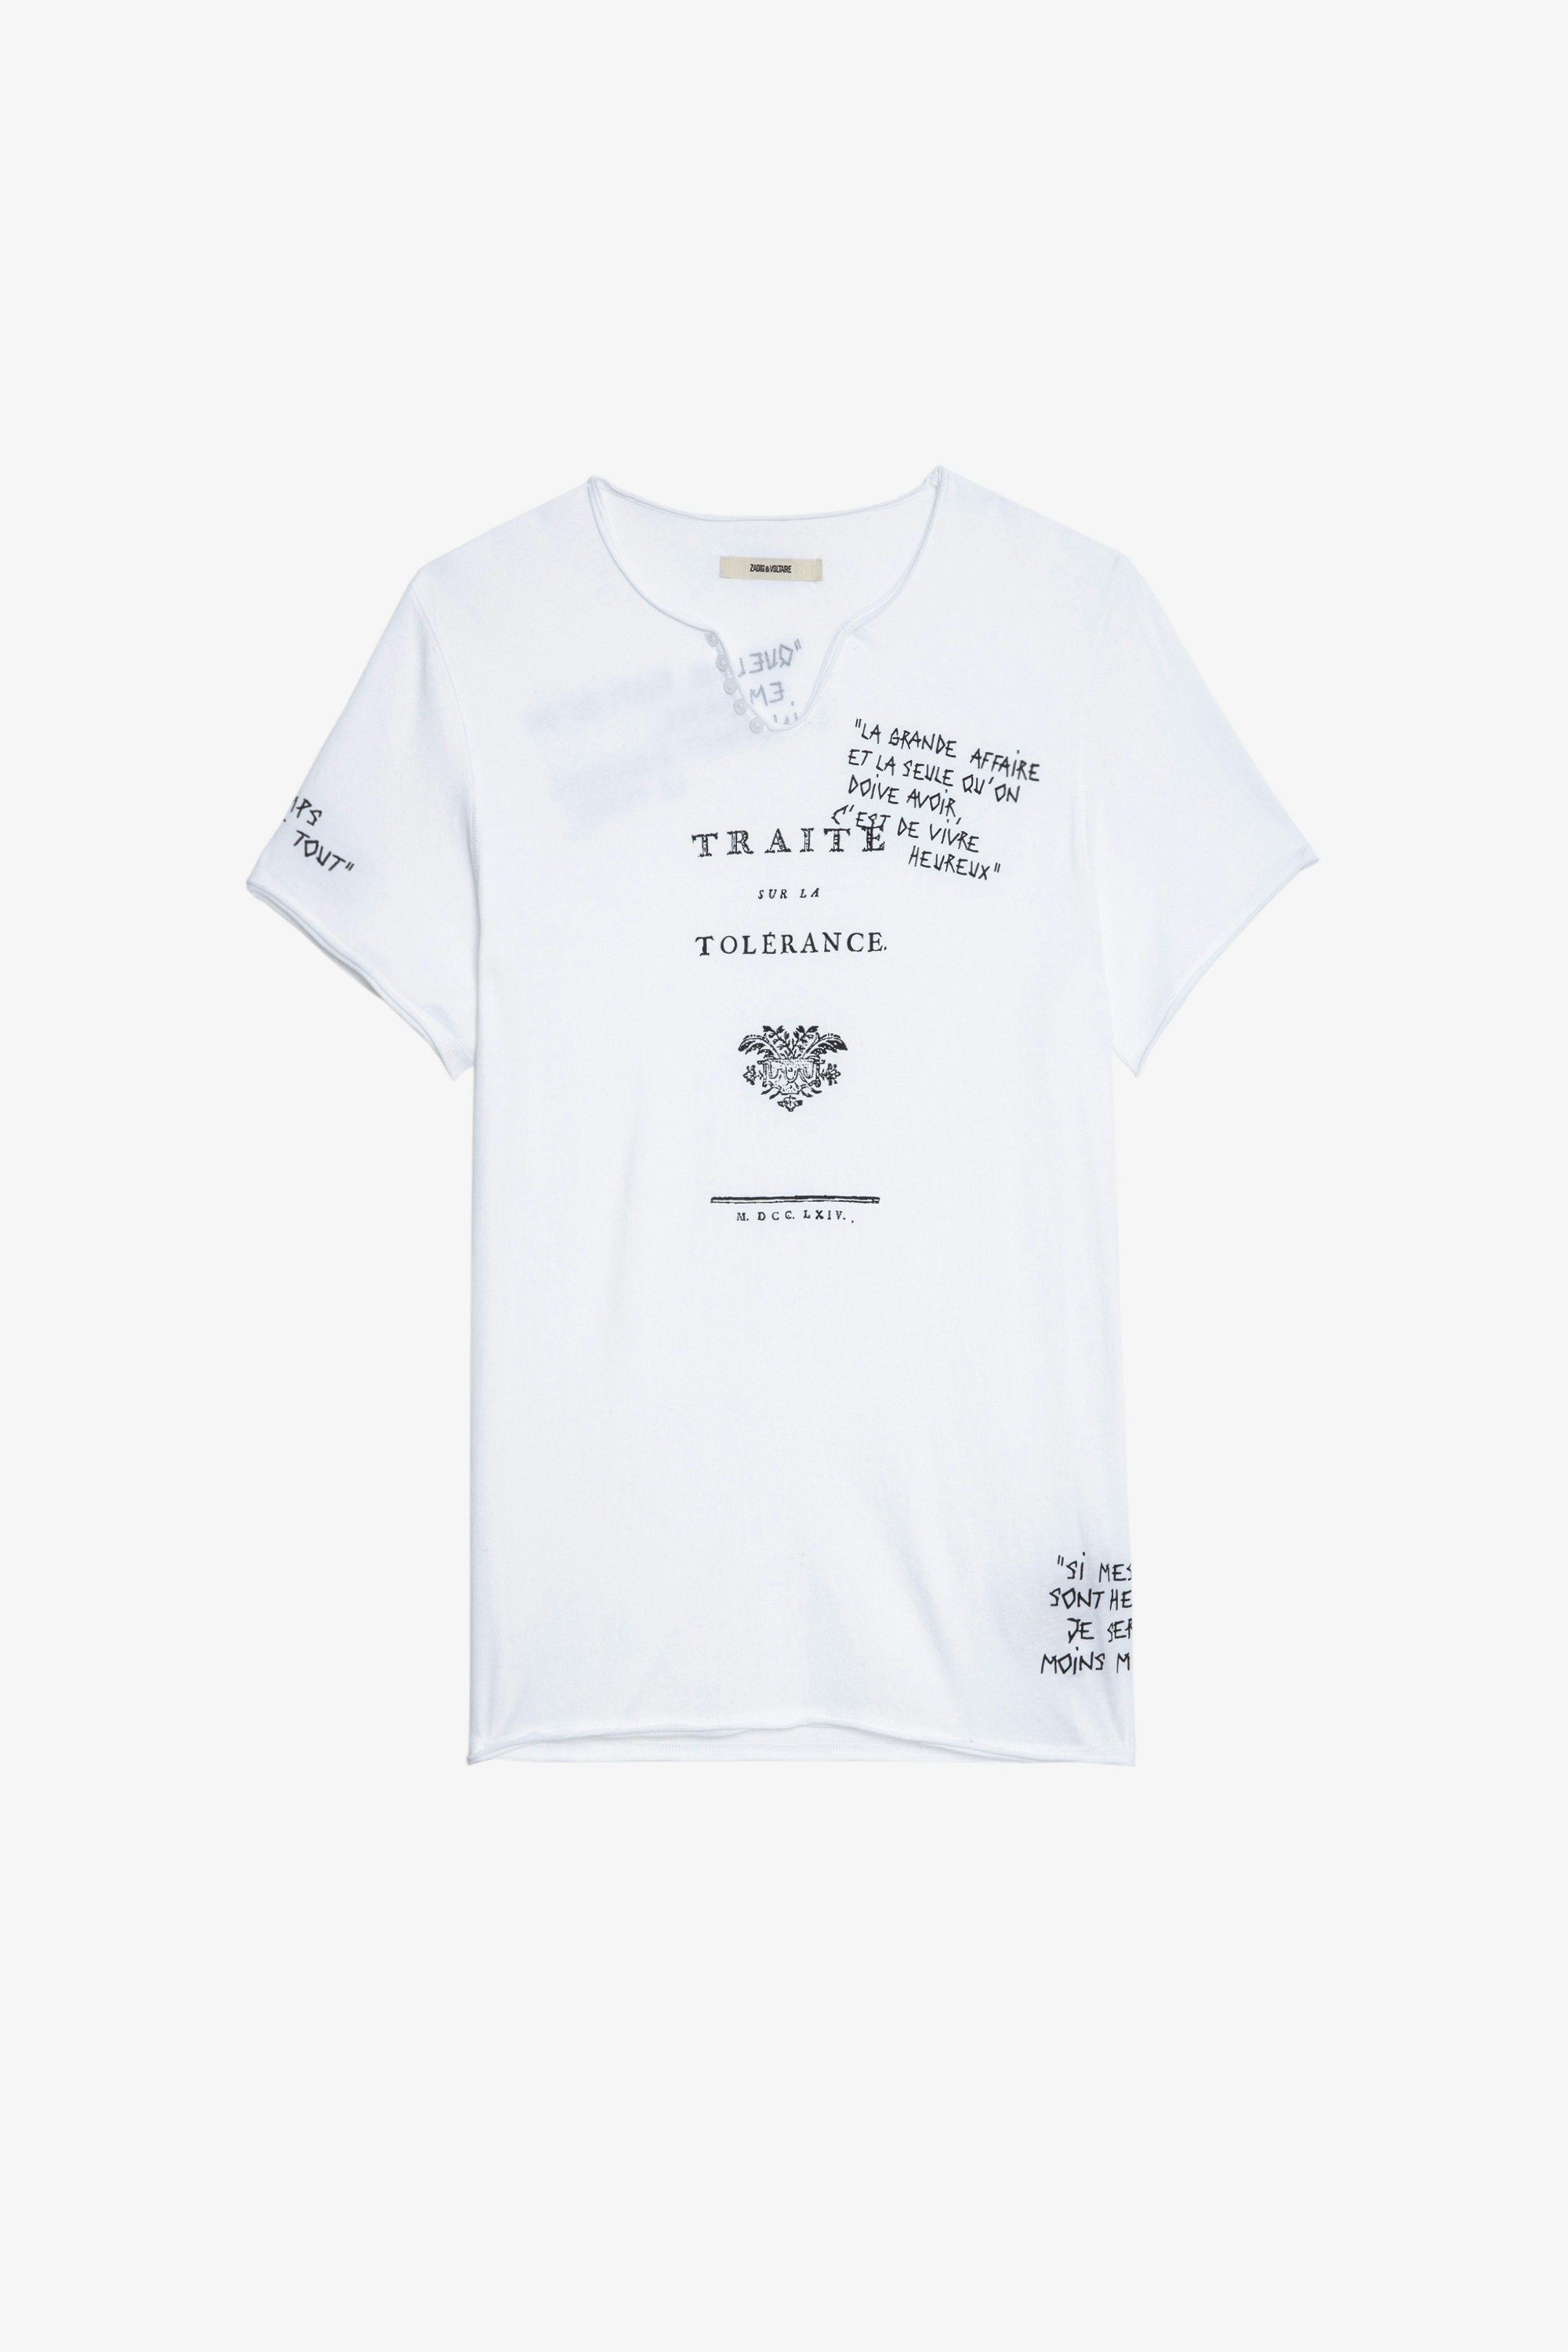 Monastir Ｔシャツ Men’s white cotton Henley T-shirt with short sleeves and “Traité de la Tolérance” quotes